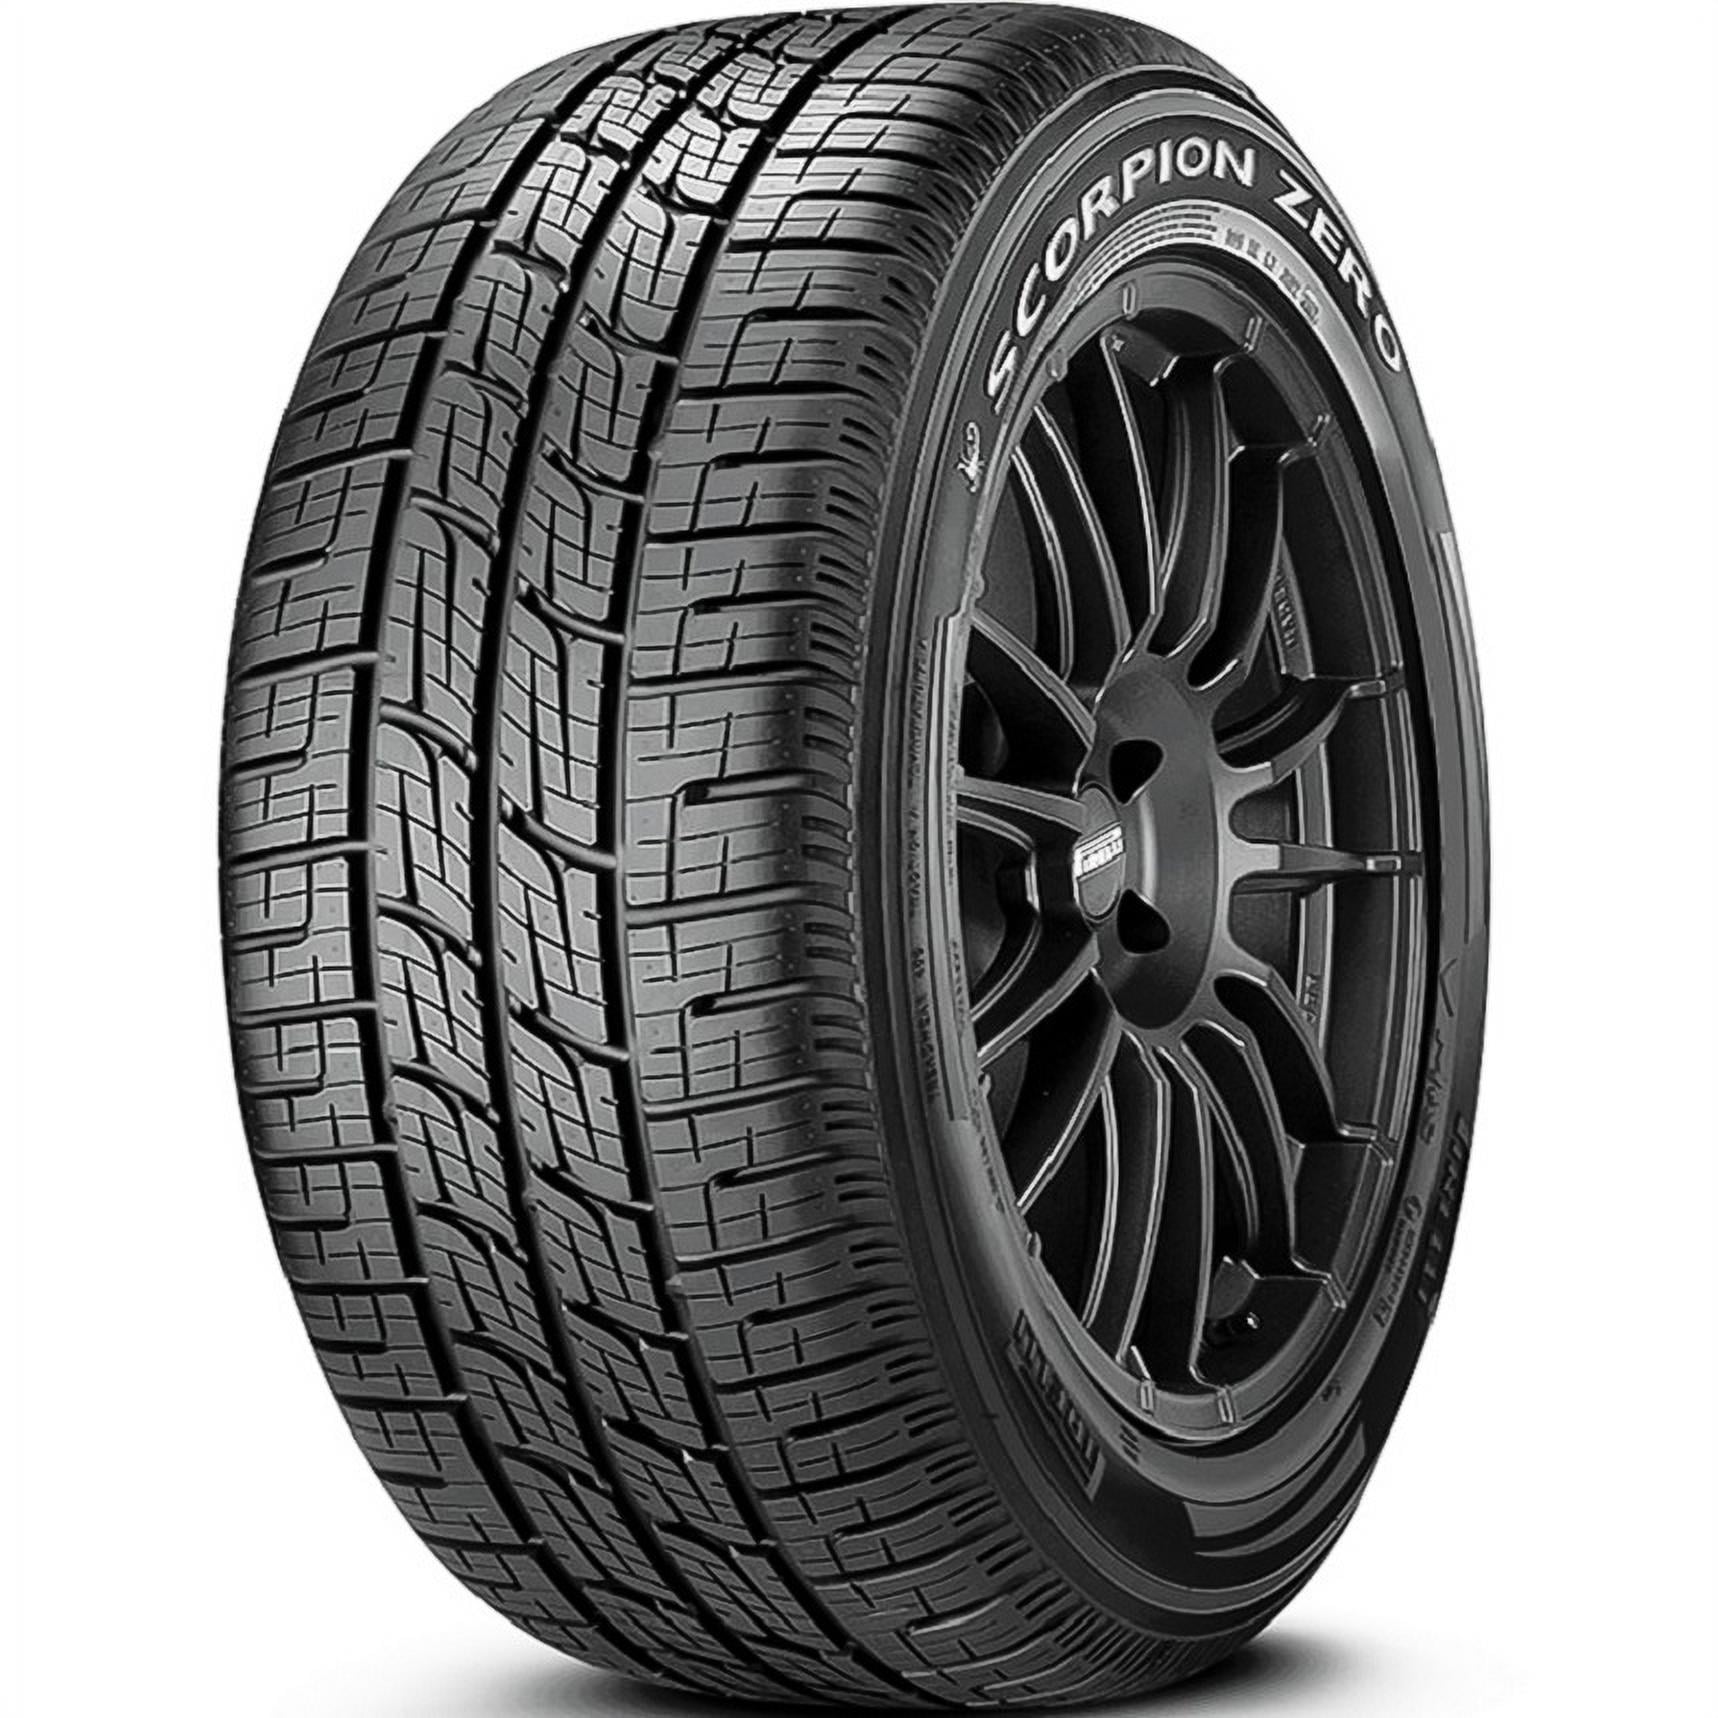 Pirelli Scorpion Zero All Season 295/40R21 111V XL SUV/Crossover Tire